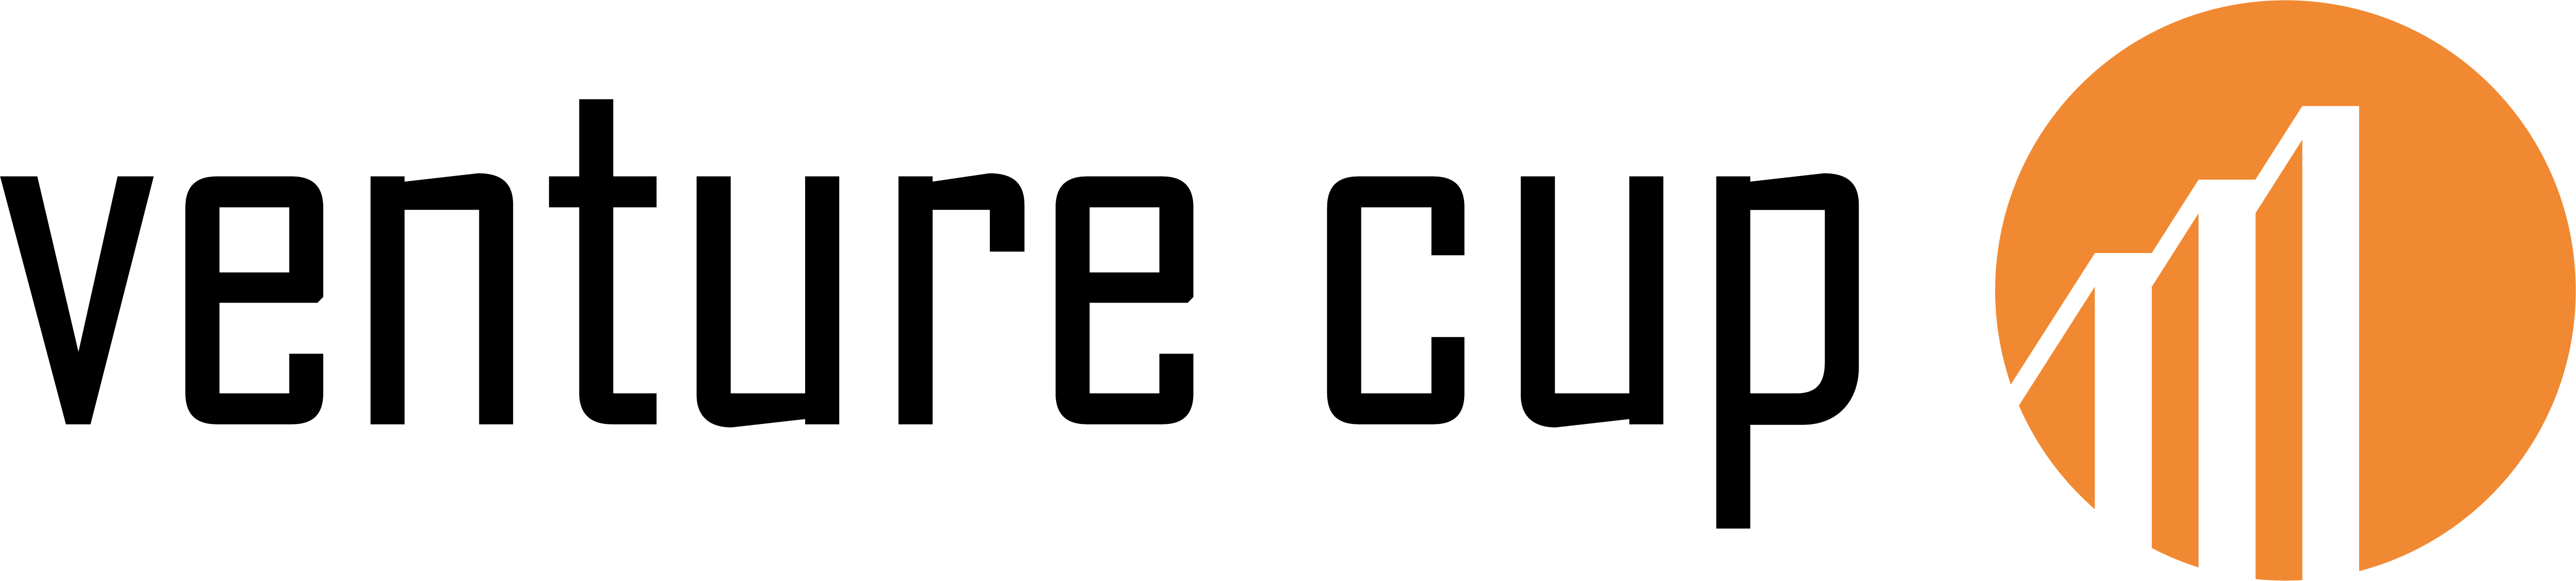 Venture Cup